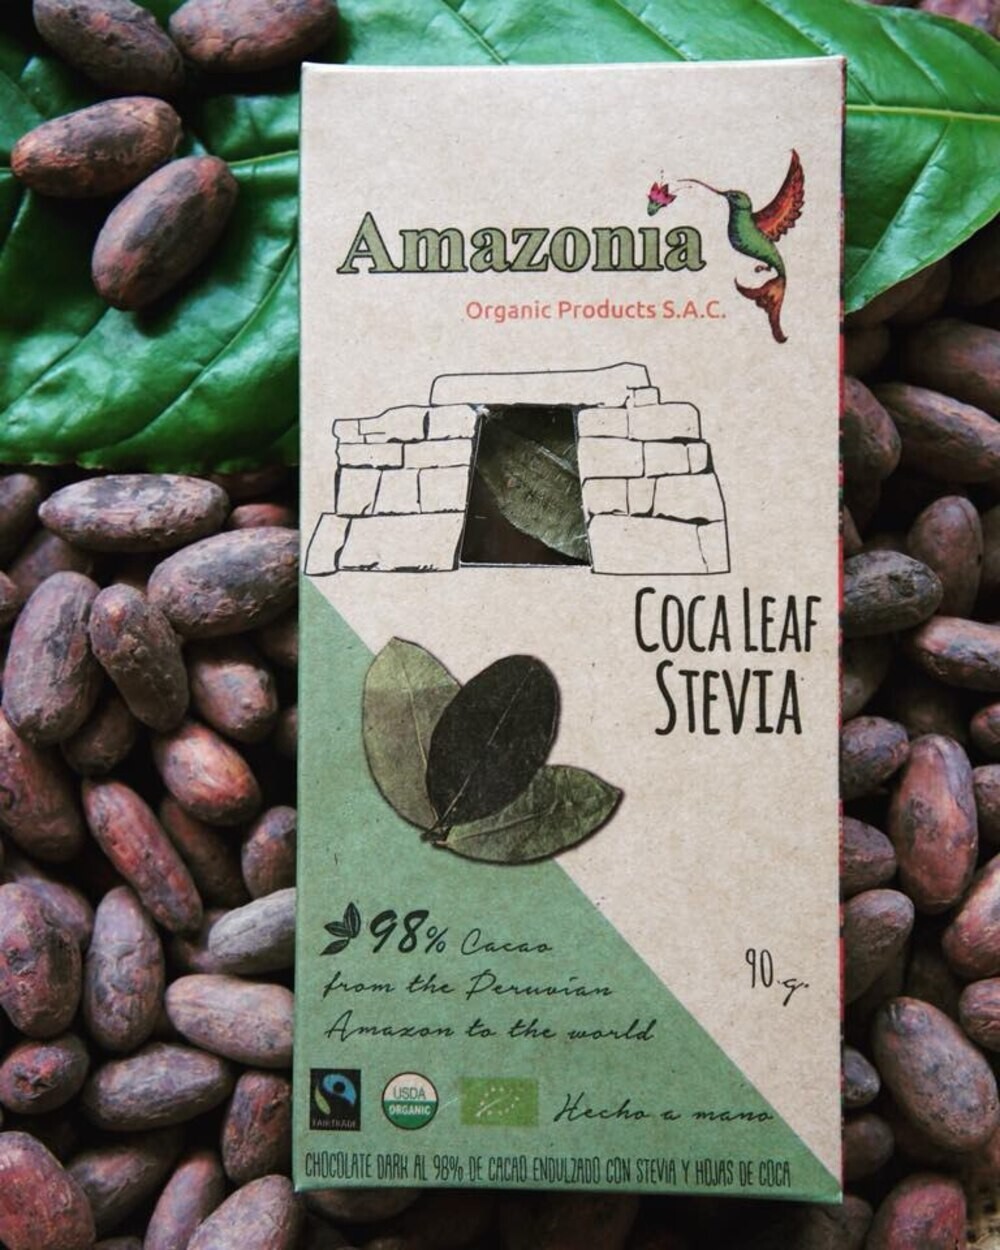 Россиянке грозит срок из-за привезённой из Перу плитки шоколада